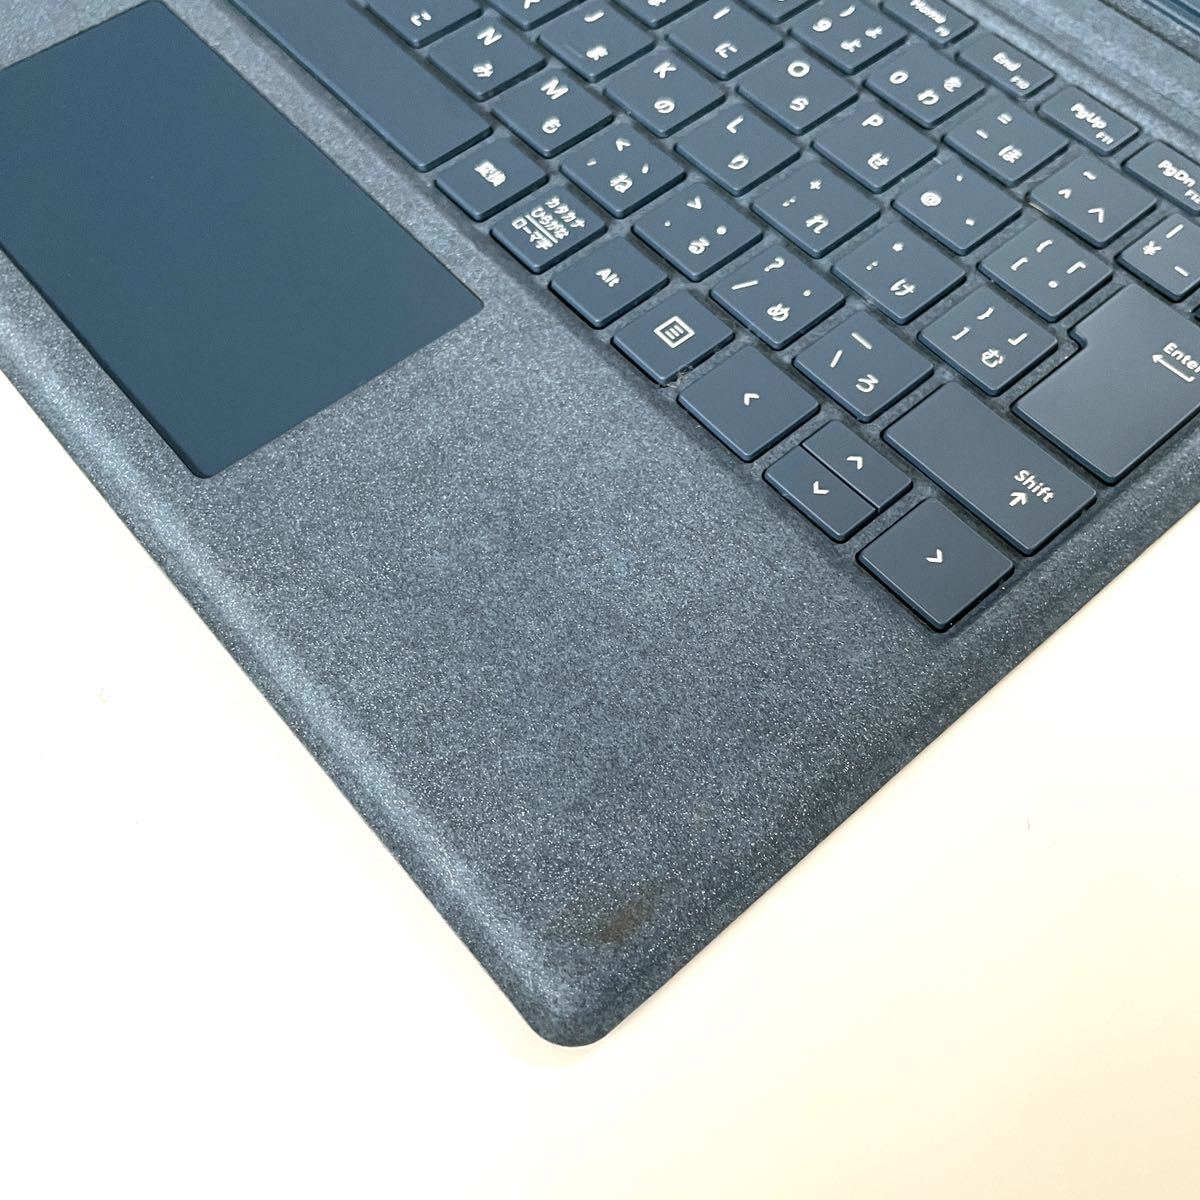 状態良好】送料無料 コバルトブルー Microsoft純正 Surface Pro タイプカバー TYPE Cover キーボード バックライト  FFP-00039 model 1725